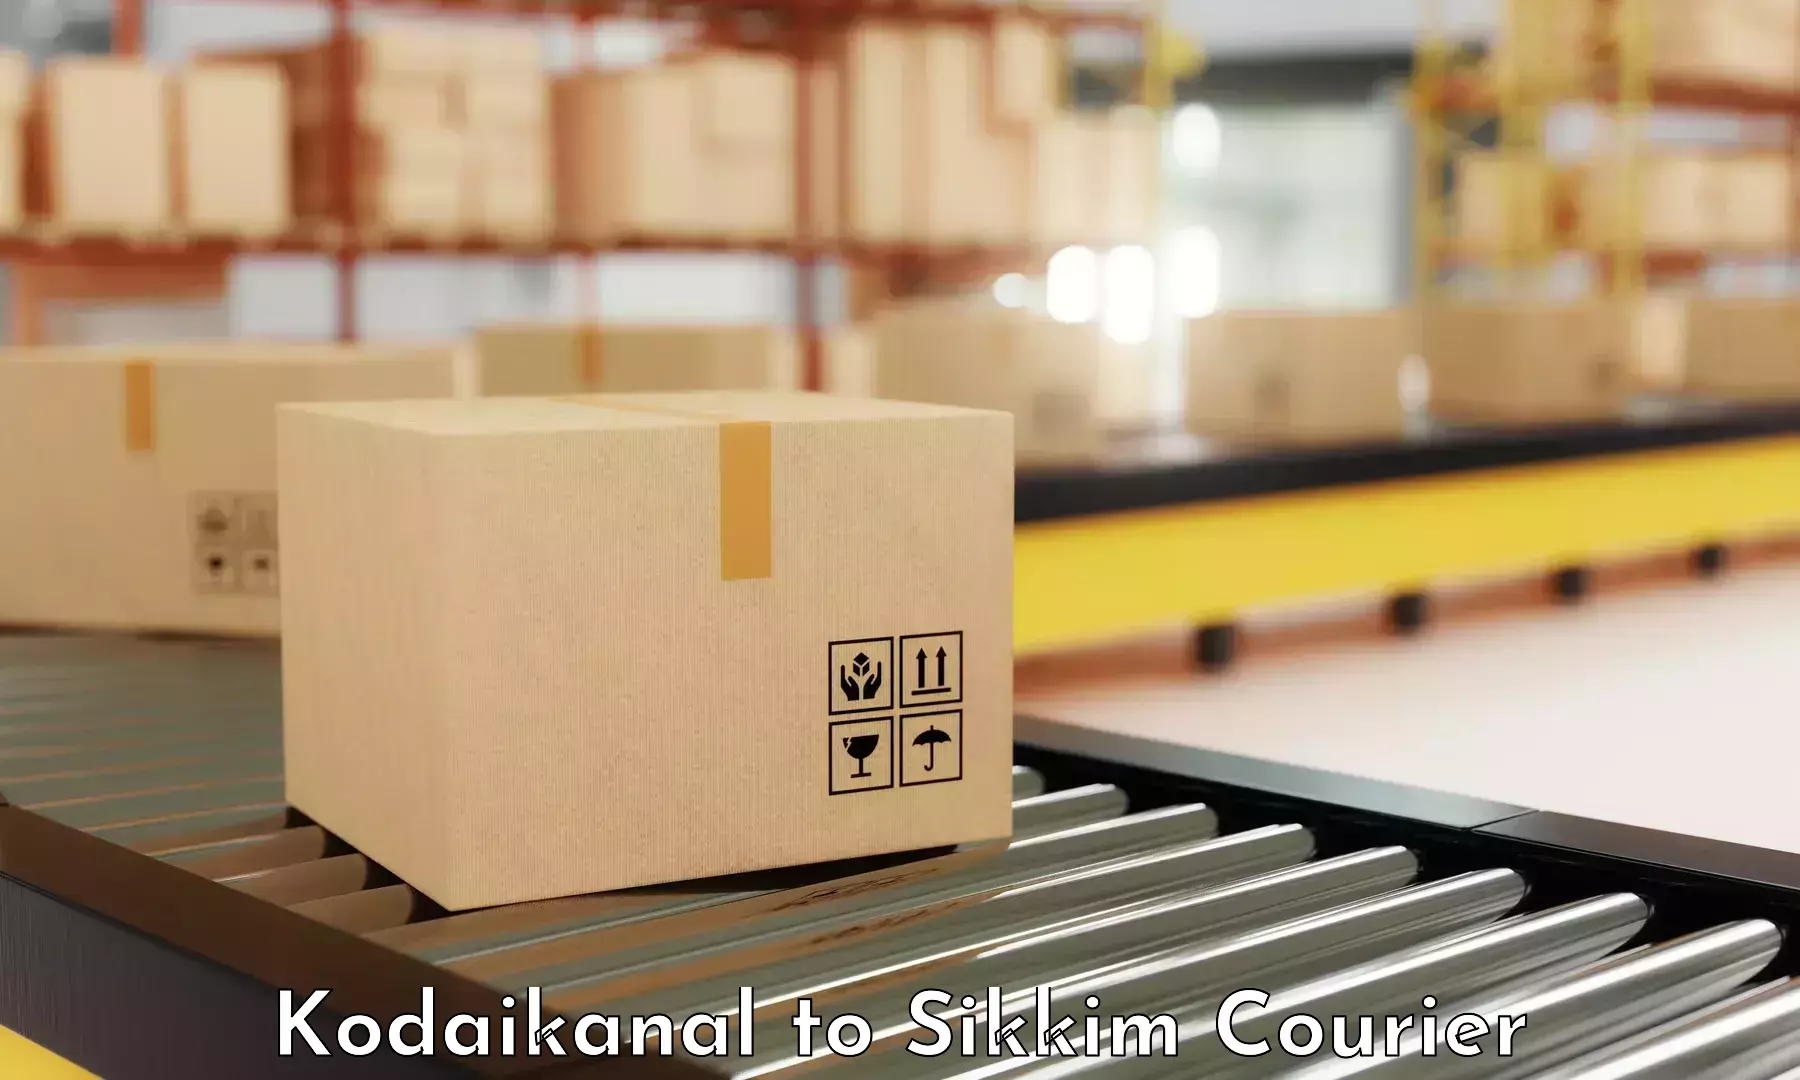 24-hour courier service Kodaikanal to Mangan